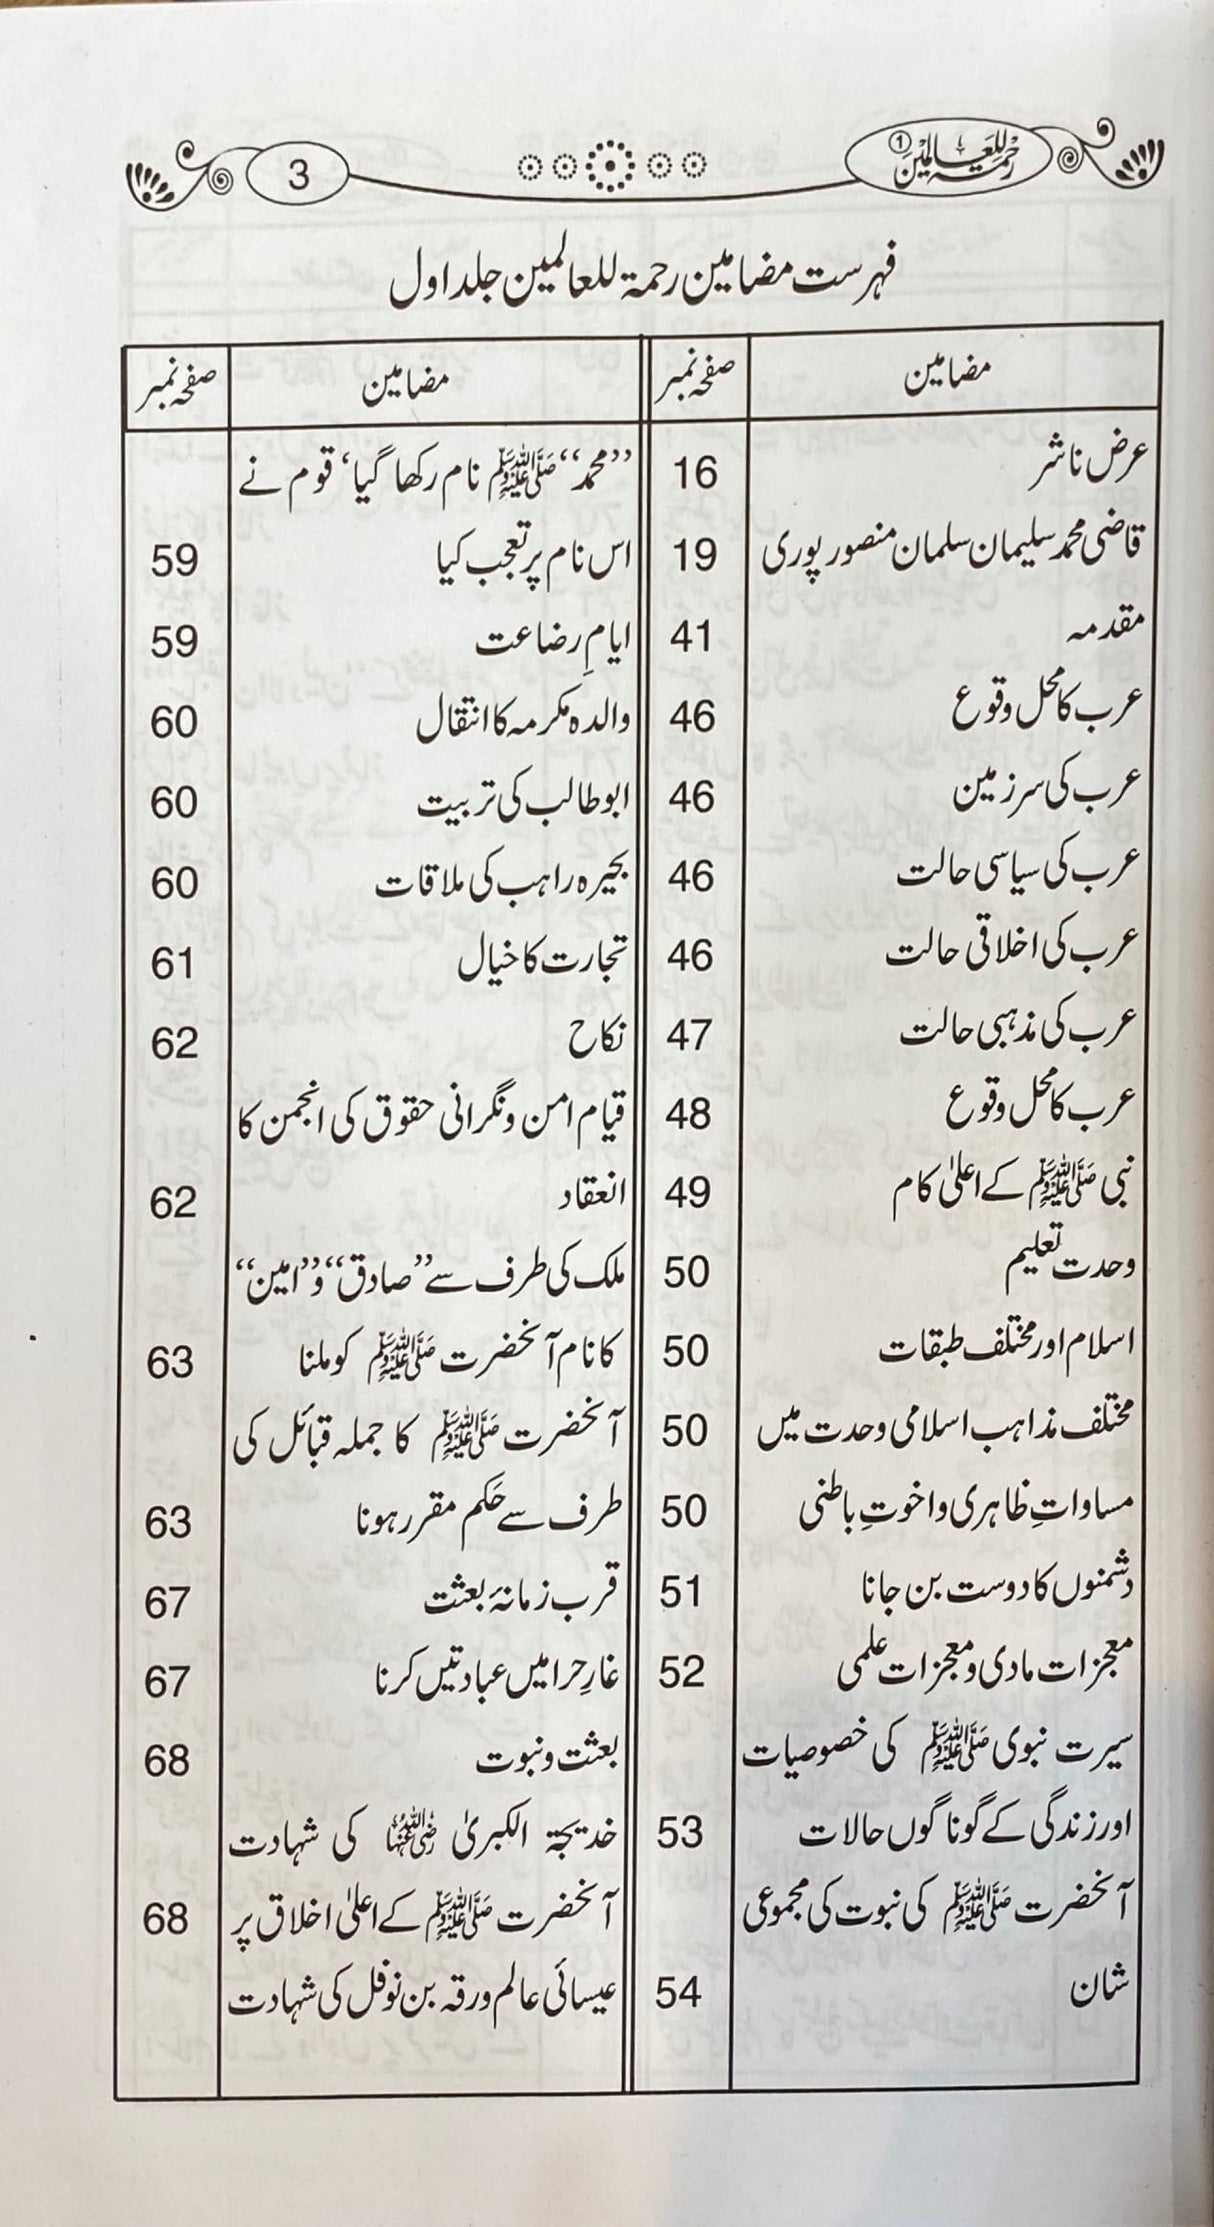 Urdu Rahmatan Lil Alimeen (3 Vol) (Maktaba Islamiy)